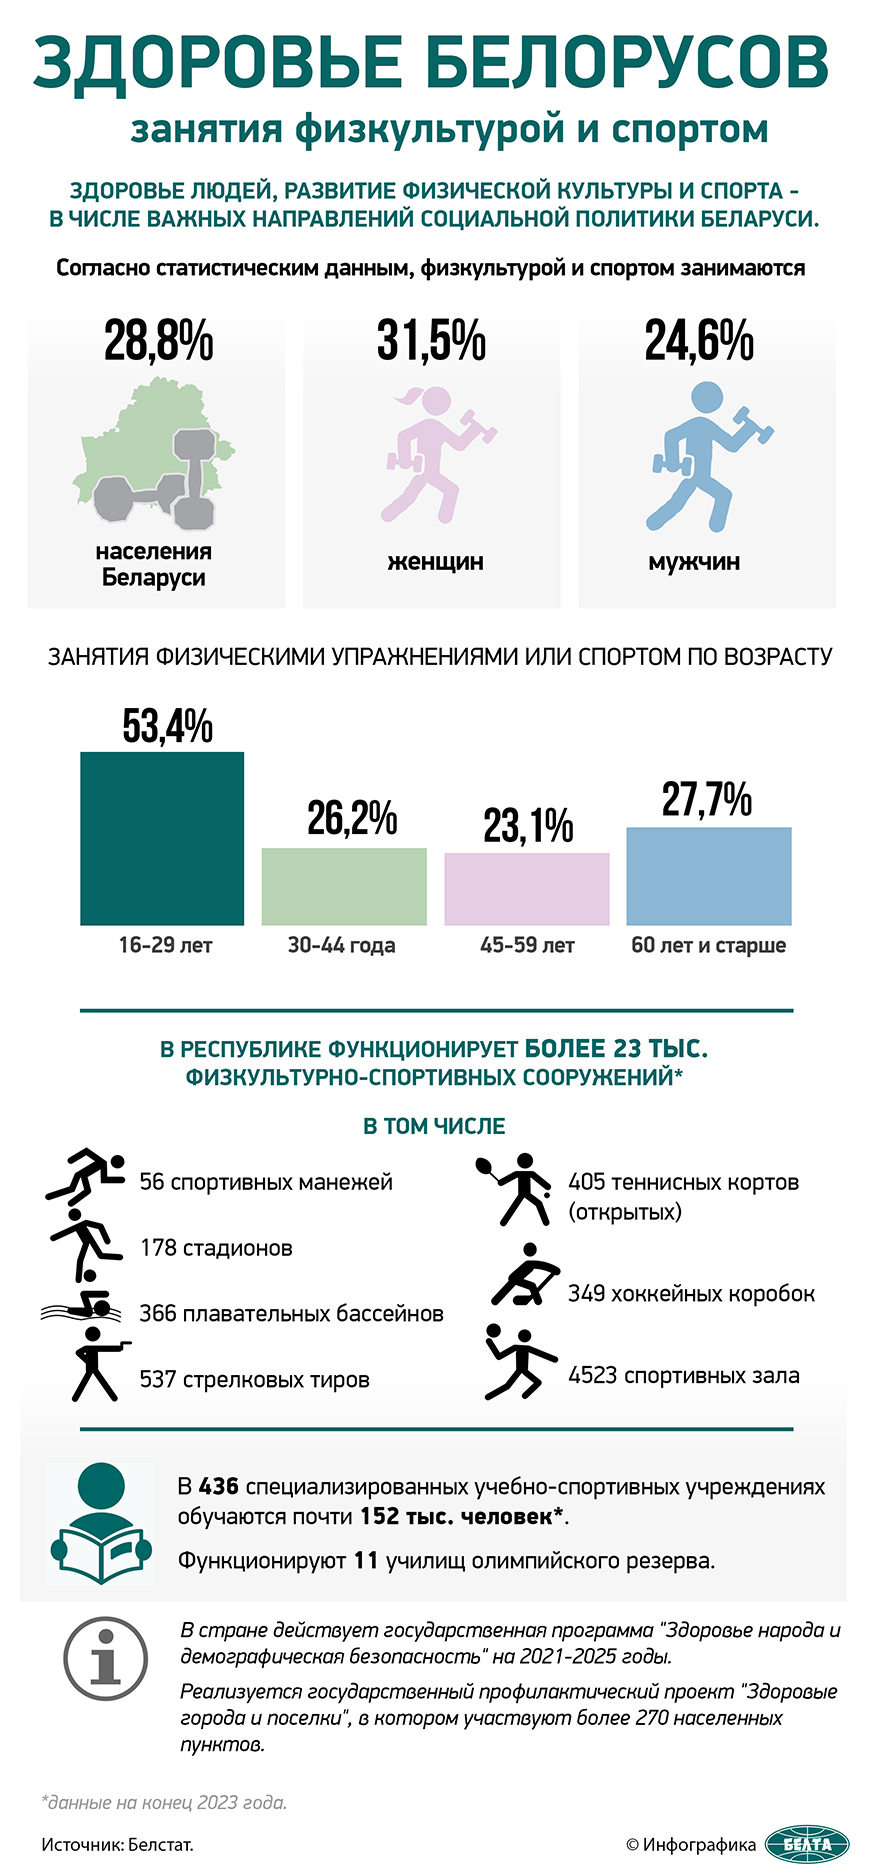 Здоровье белорусов: занятия физкультурой и спортом